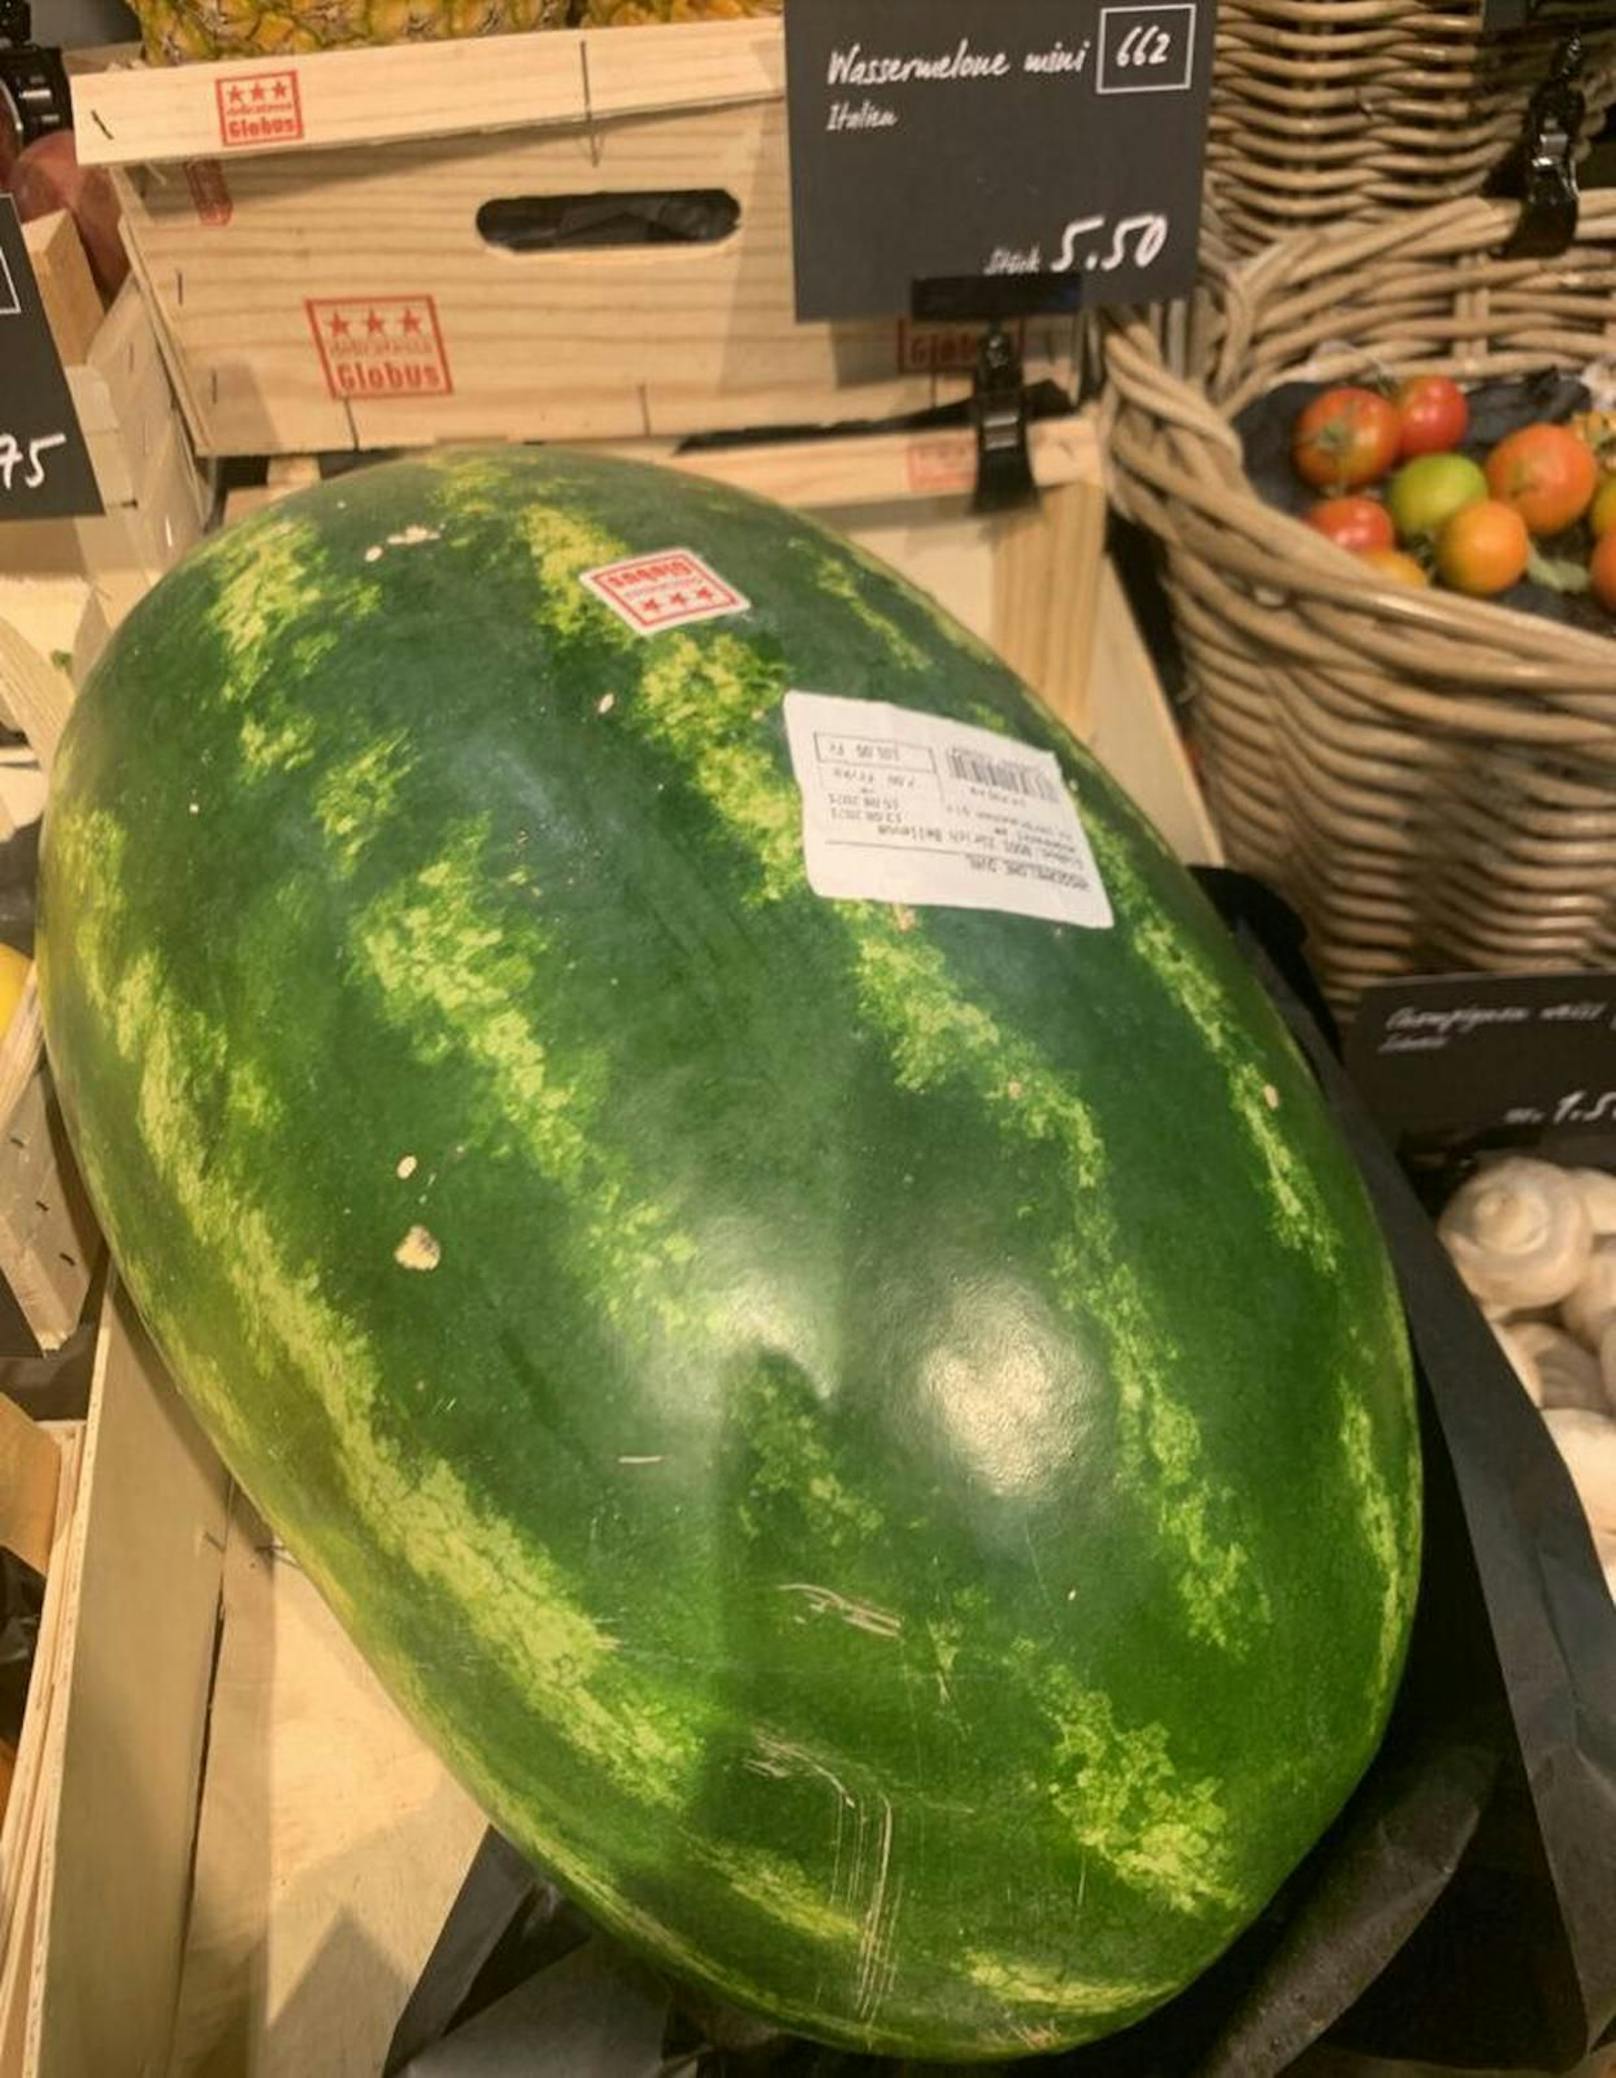 Der Kaufpreis für diese Melone ist fast 95 Euro – pro Kilo ergibt das über sechs Euro.